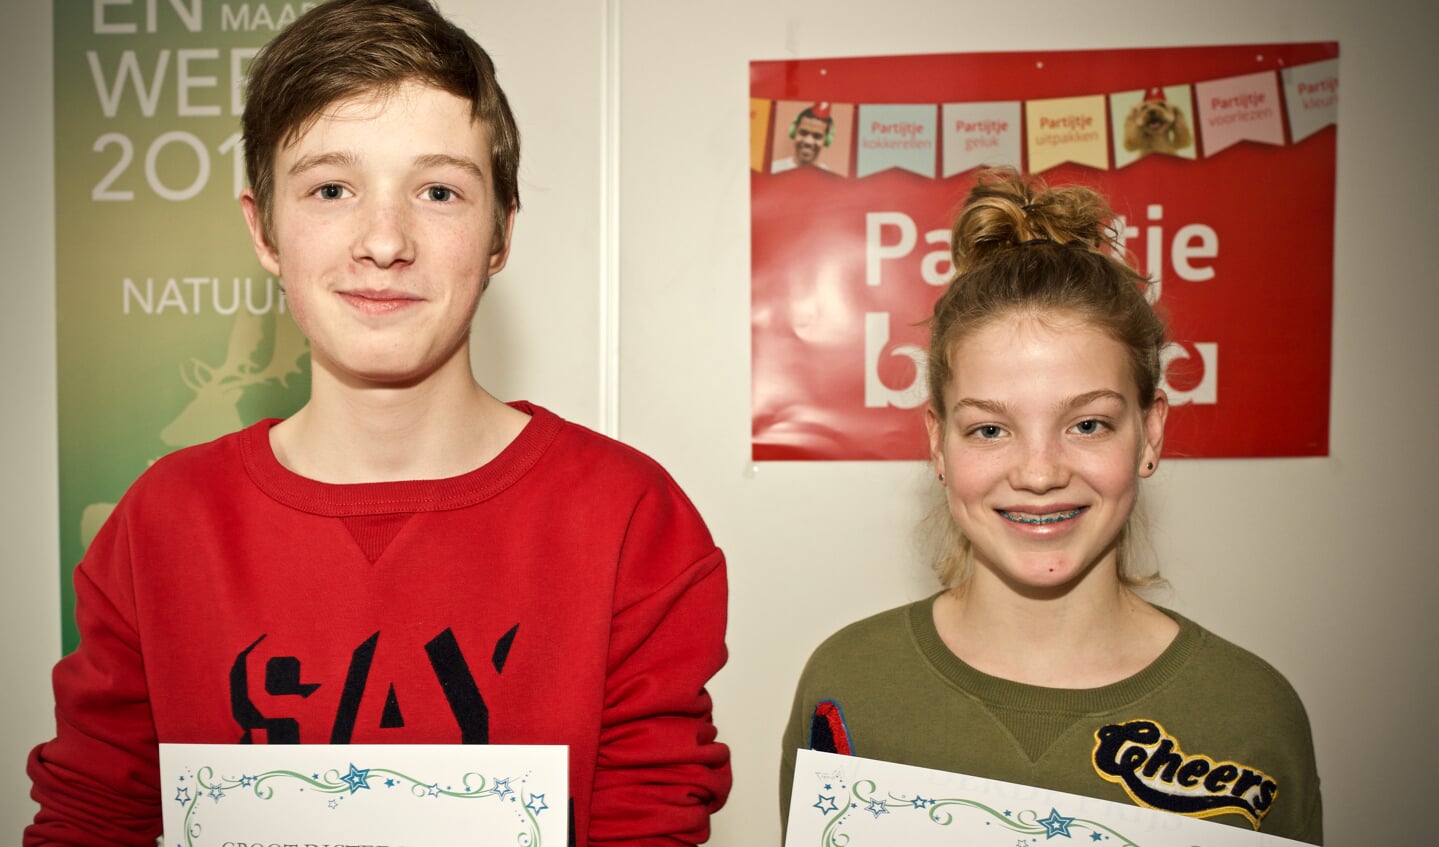 Winnaars bij de jeugd:
Wouter Schouten en Pien Borst, derde prijs winnaar Sil Keijser (ontbreekt op de foto) werd later bekend gemaakt.